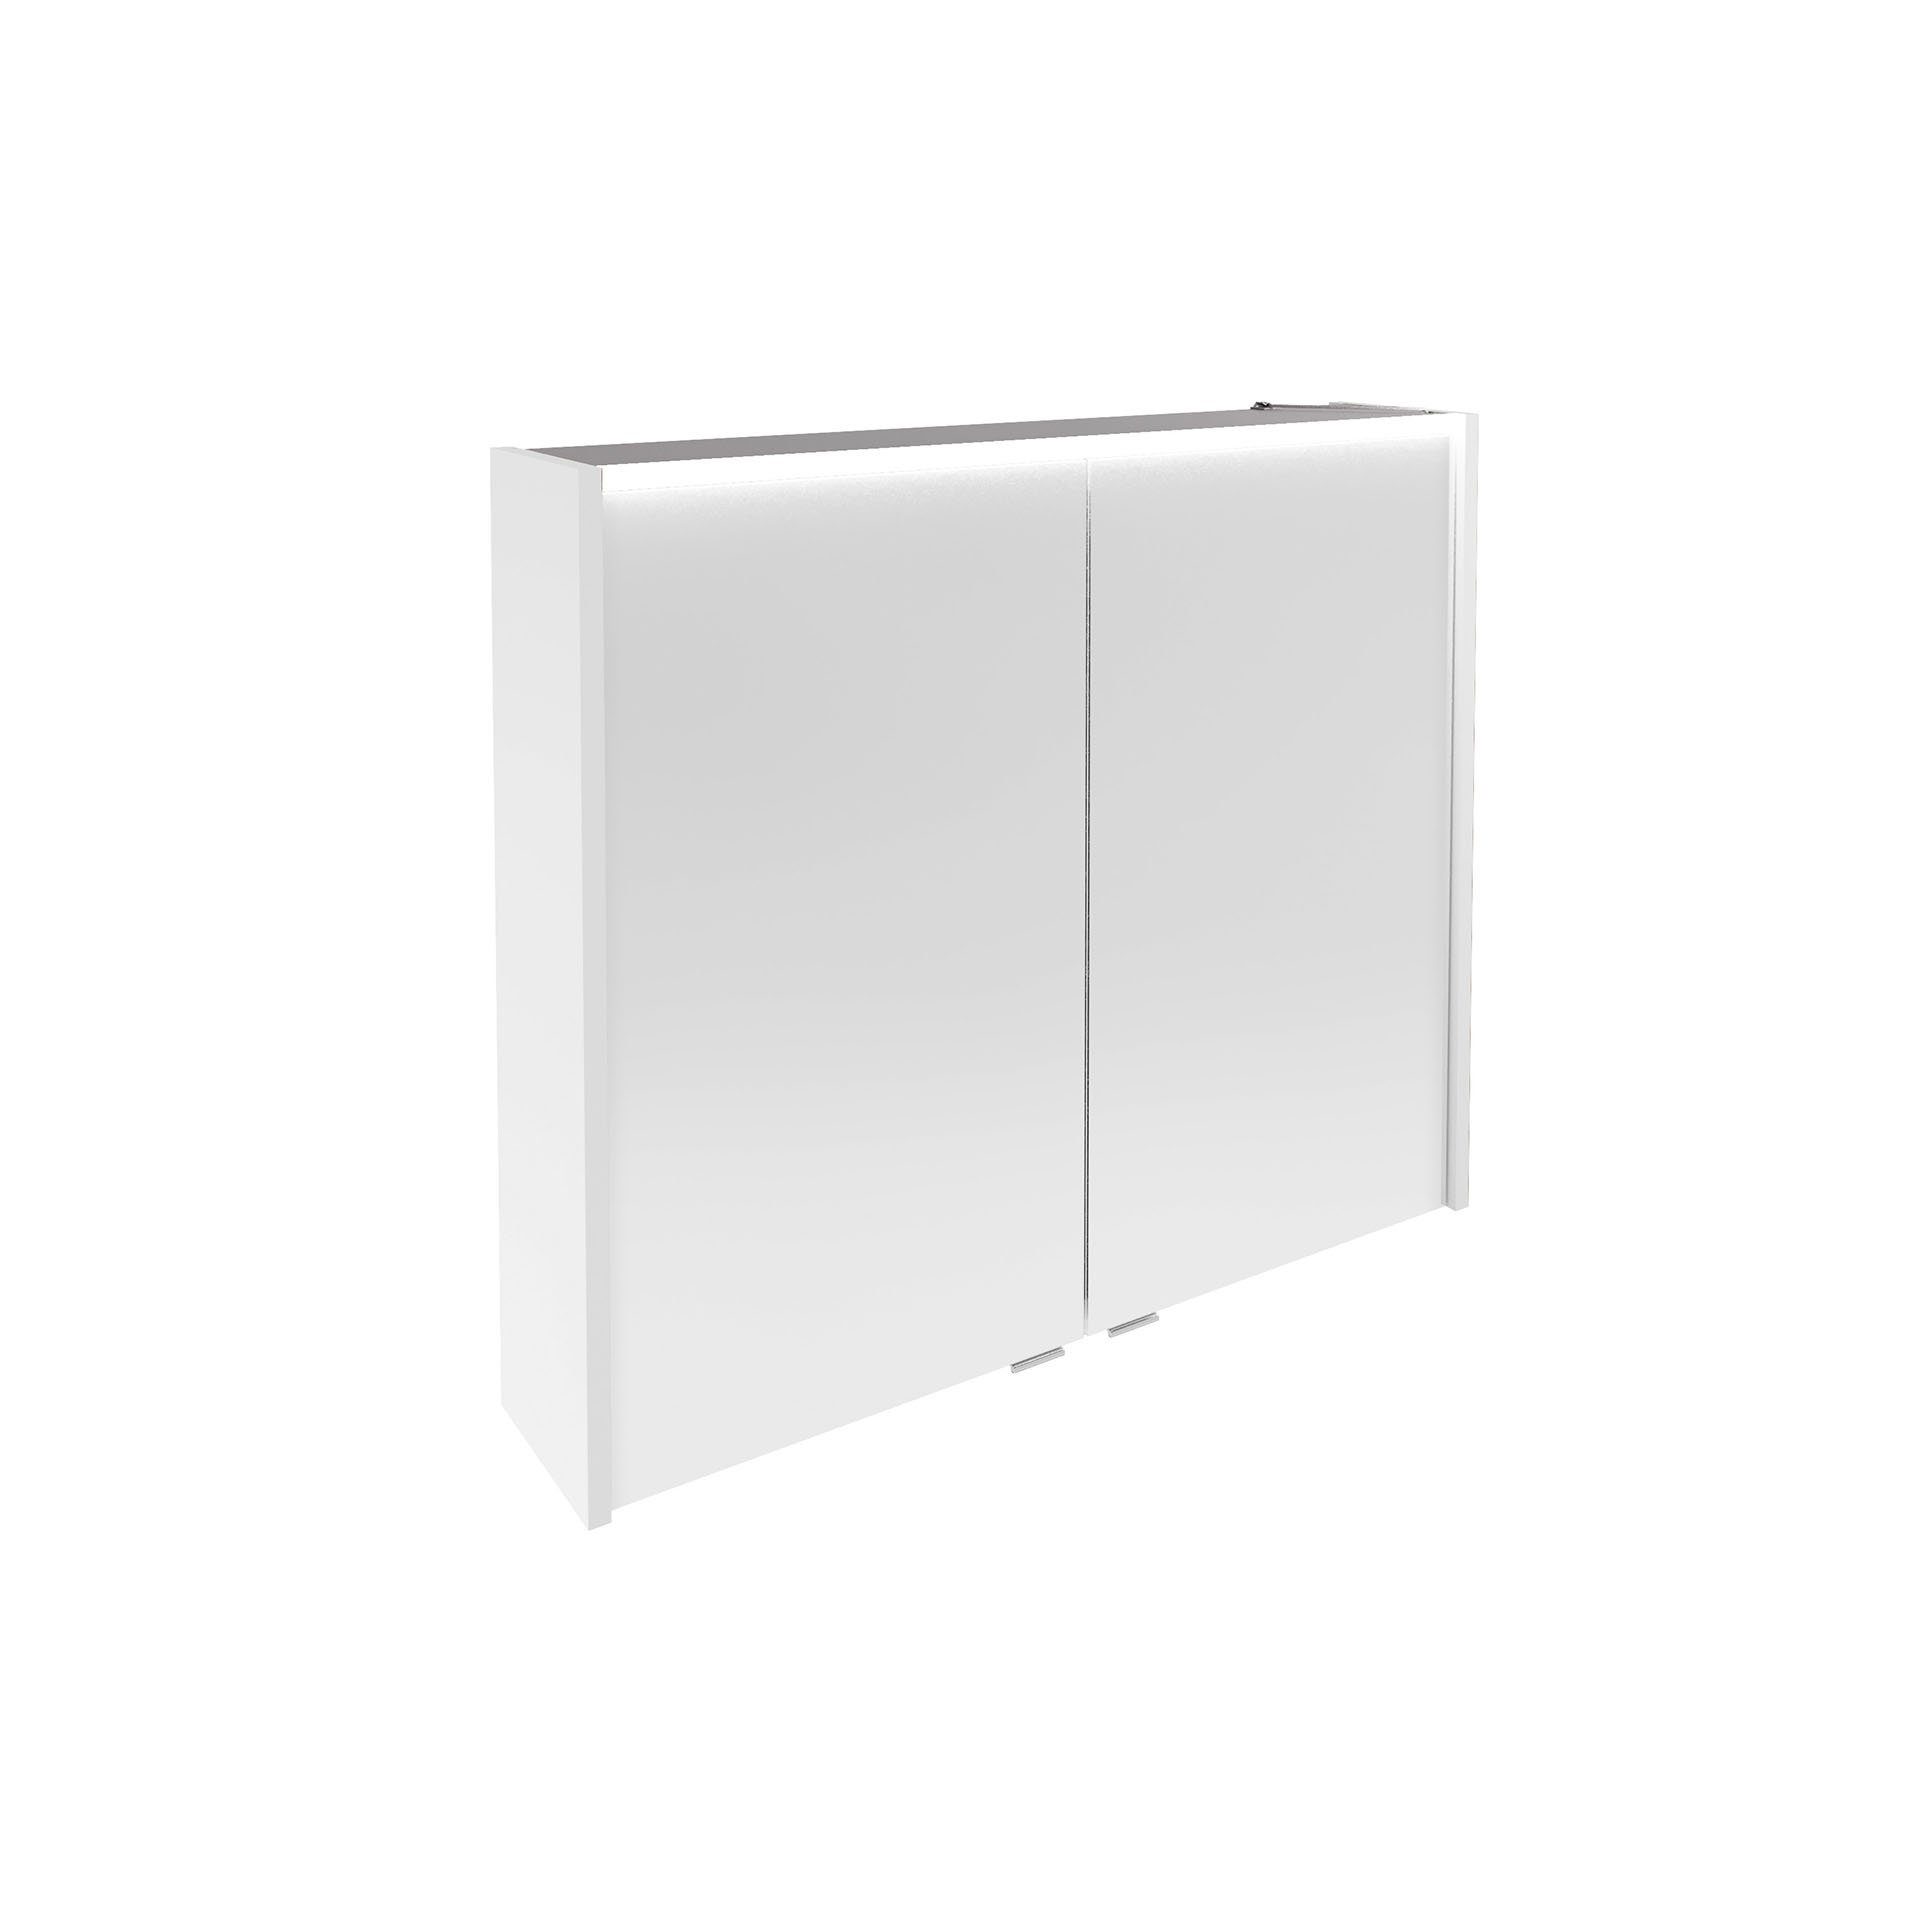 hängend – FACKELMANN Verona Weiß vormontiert, LED-Spiegelschrank Badezimmerspiegelschrank